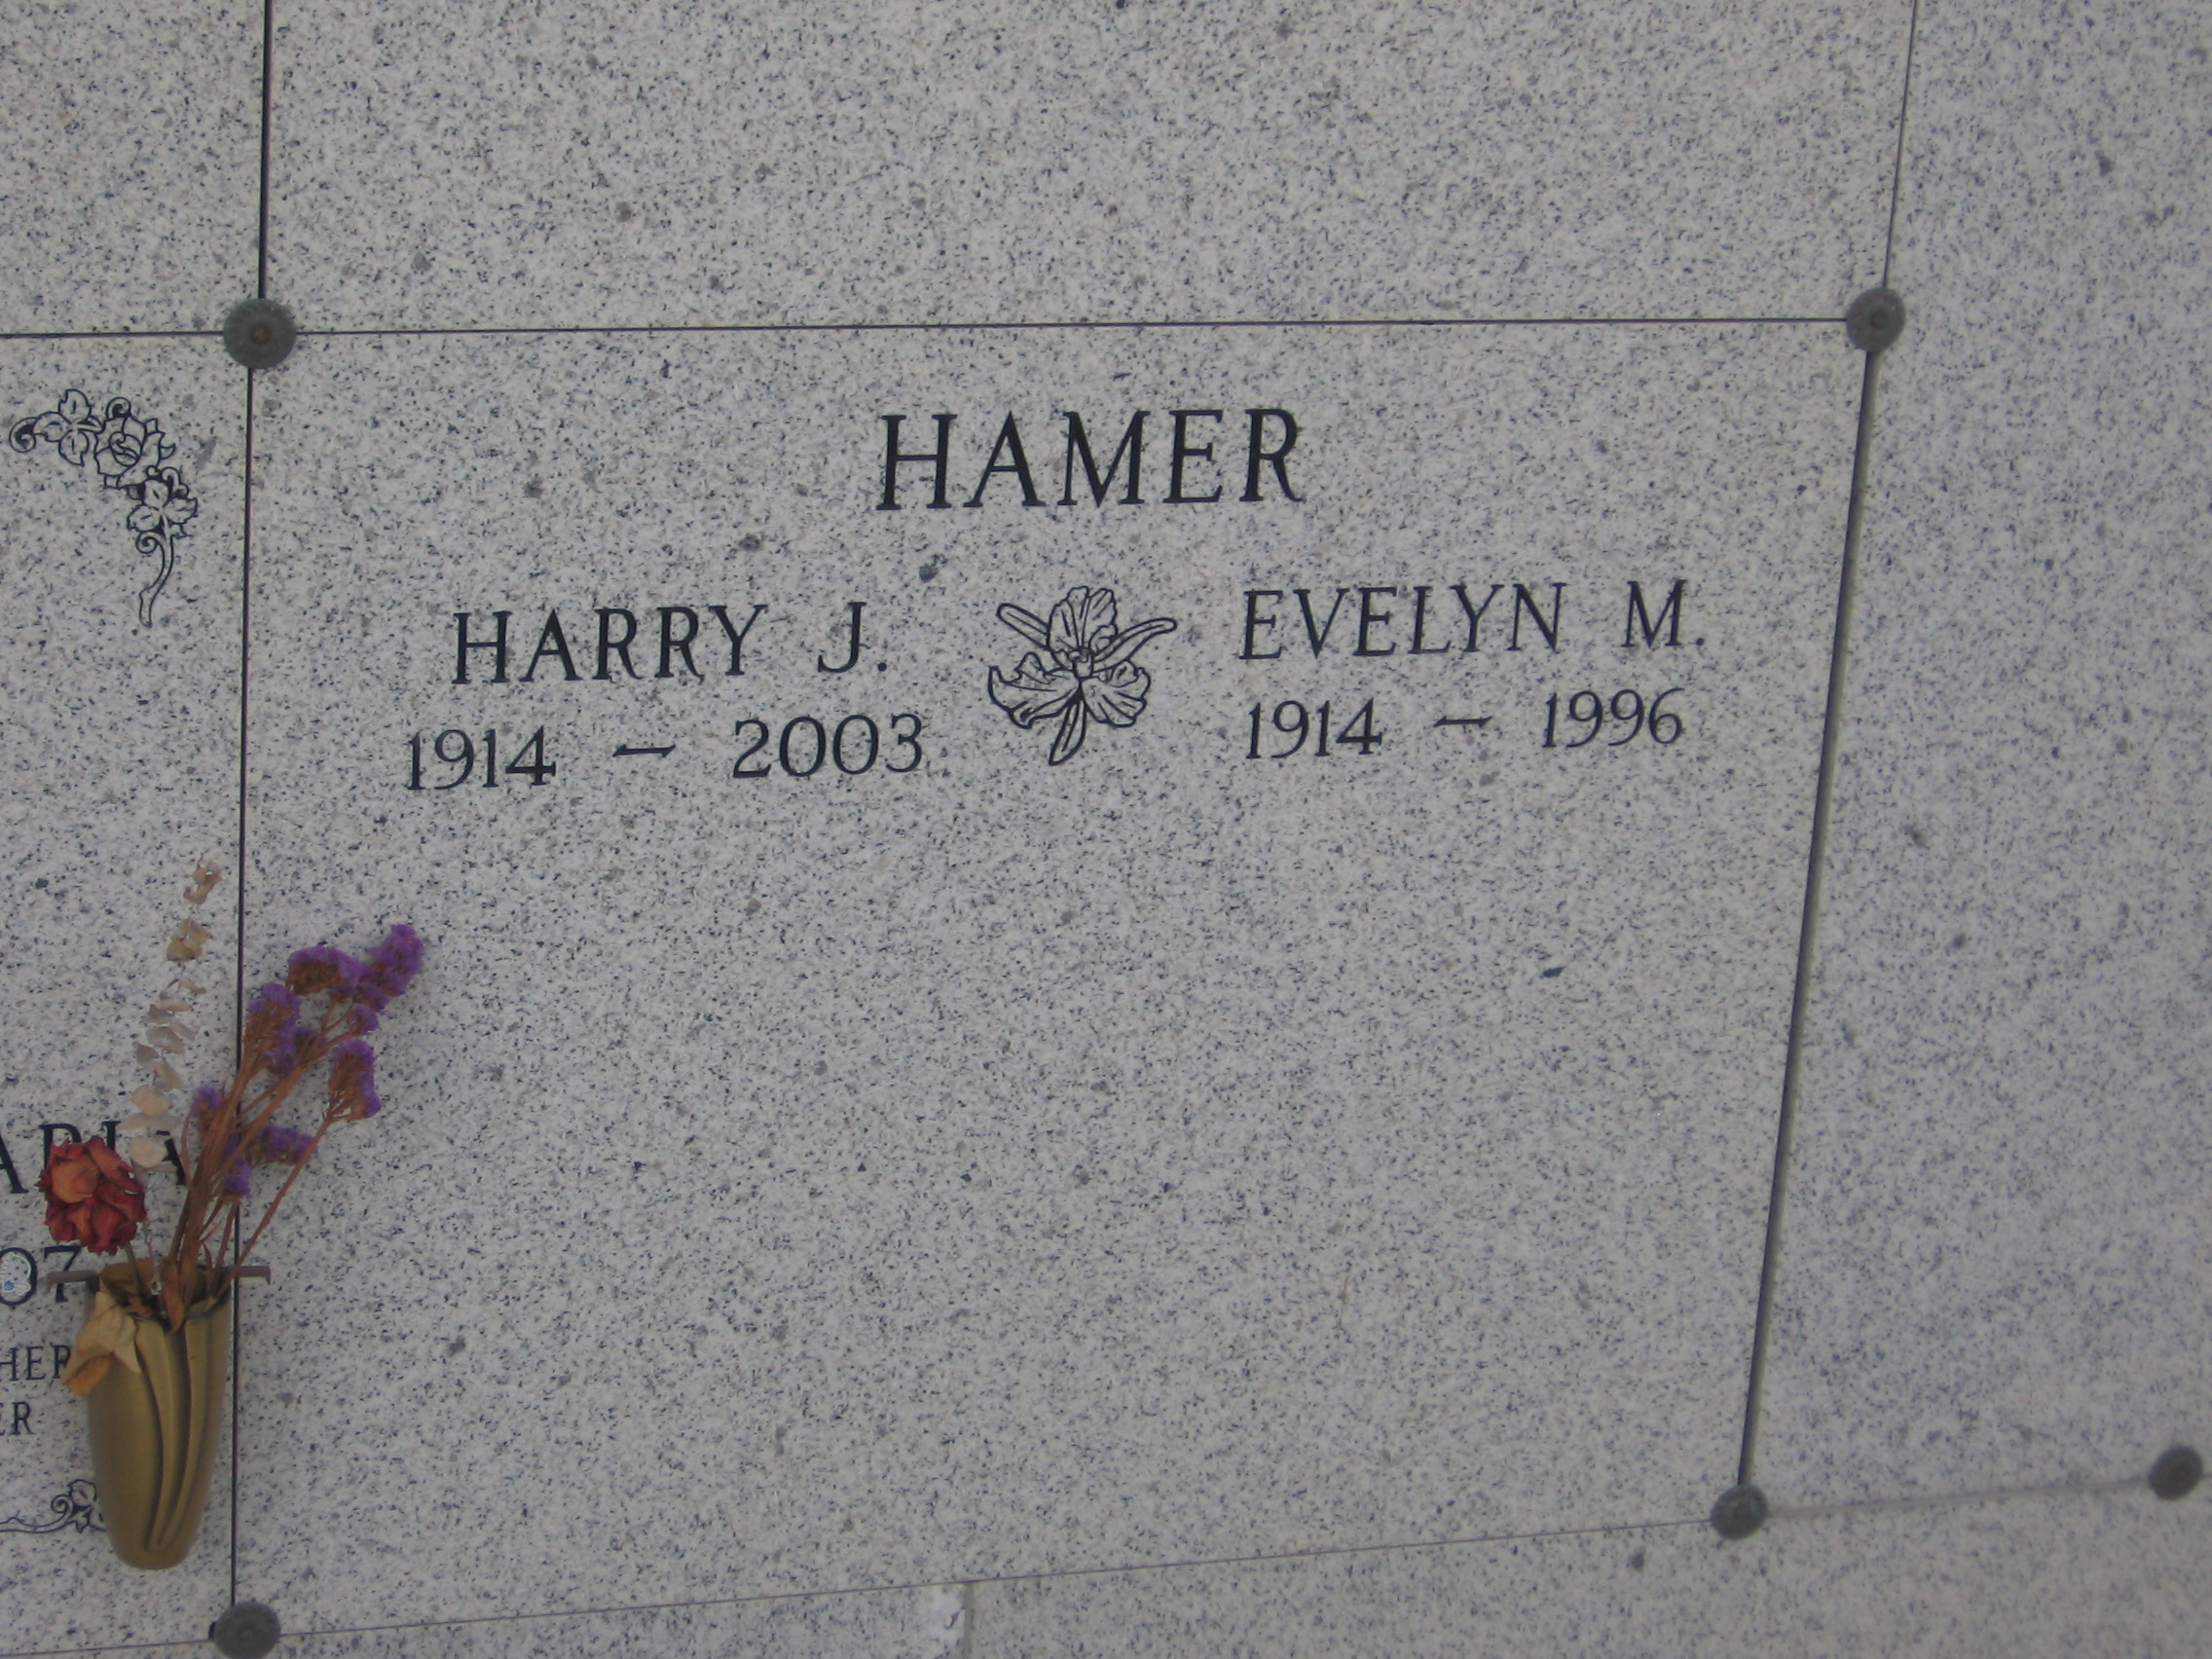 Harry J Hamer